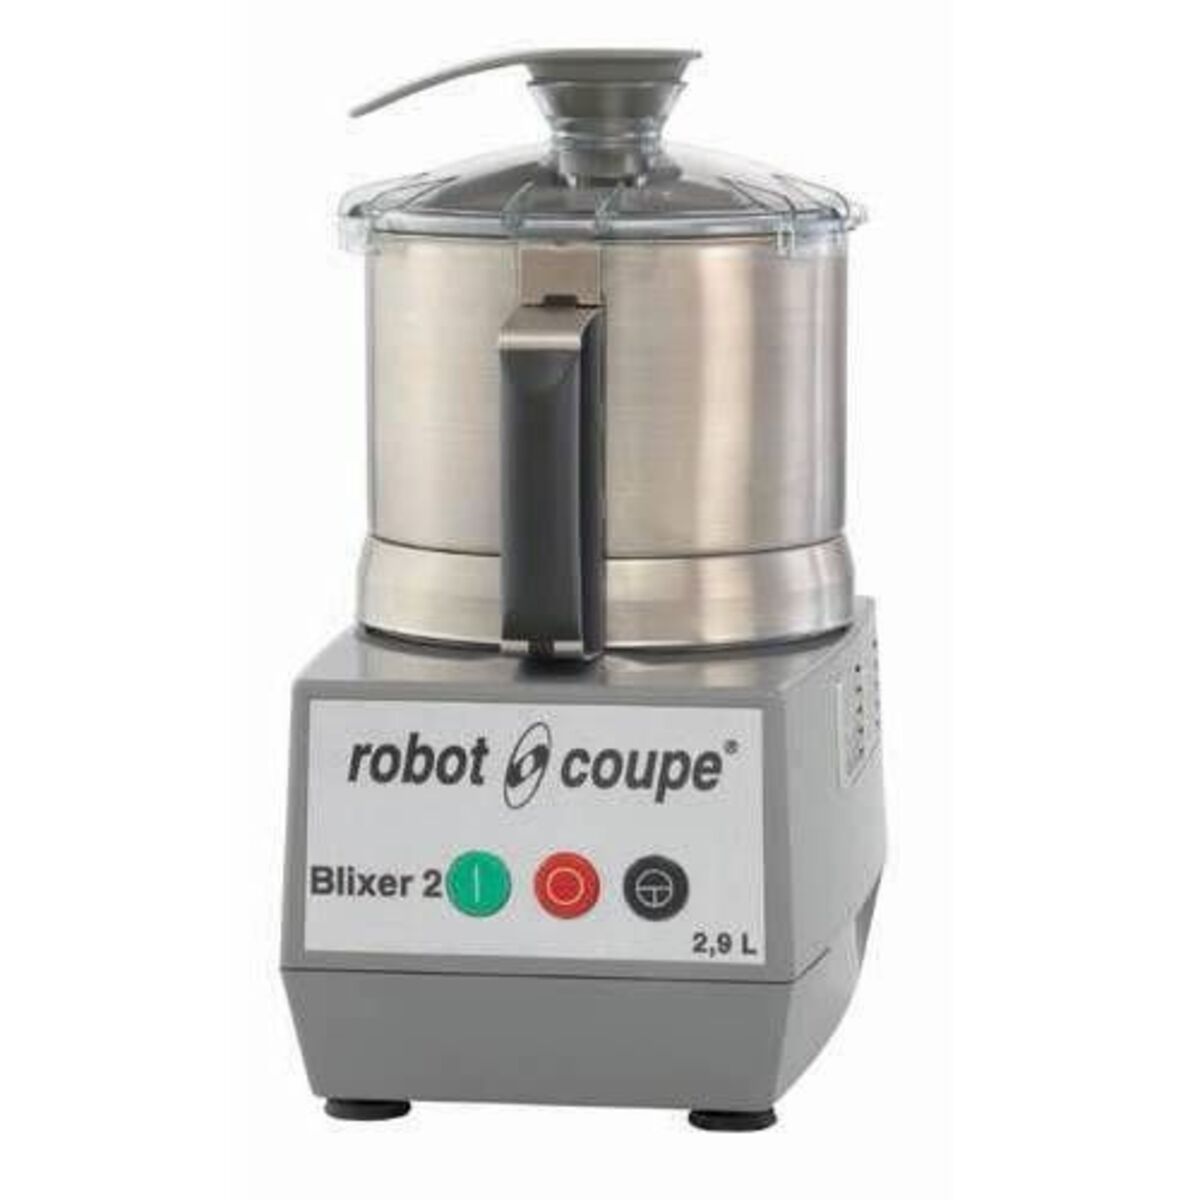 Blixer 2 robot coupe, monophasé 230/50/1